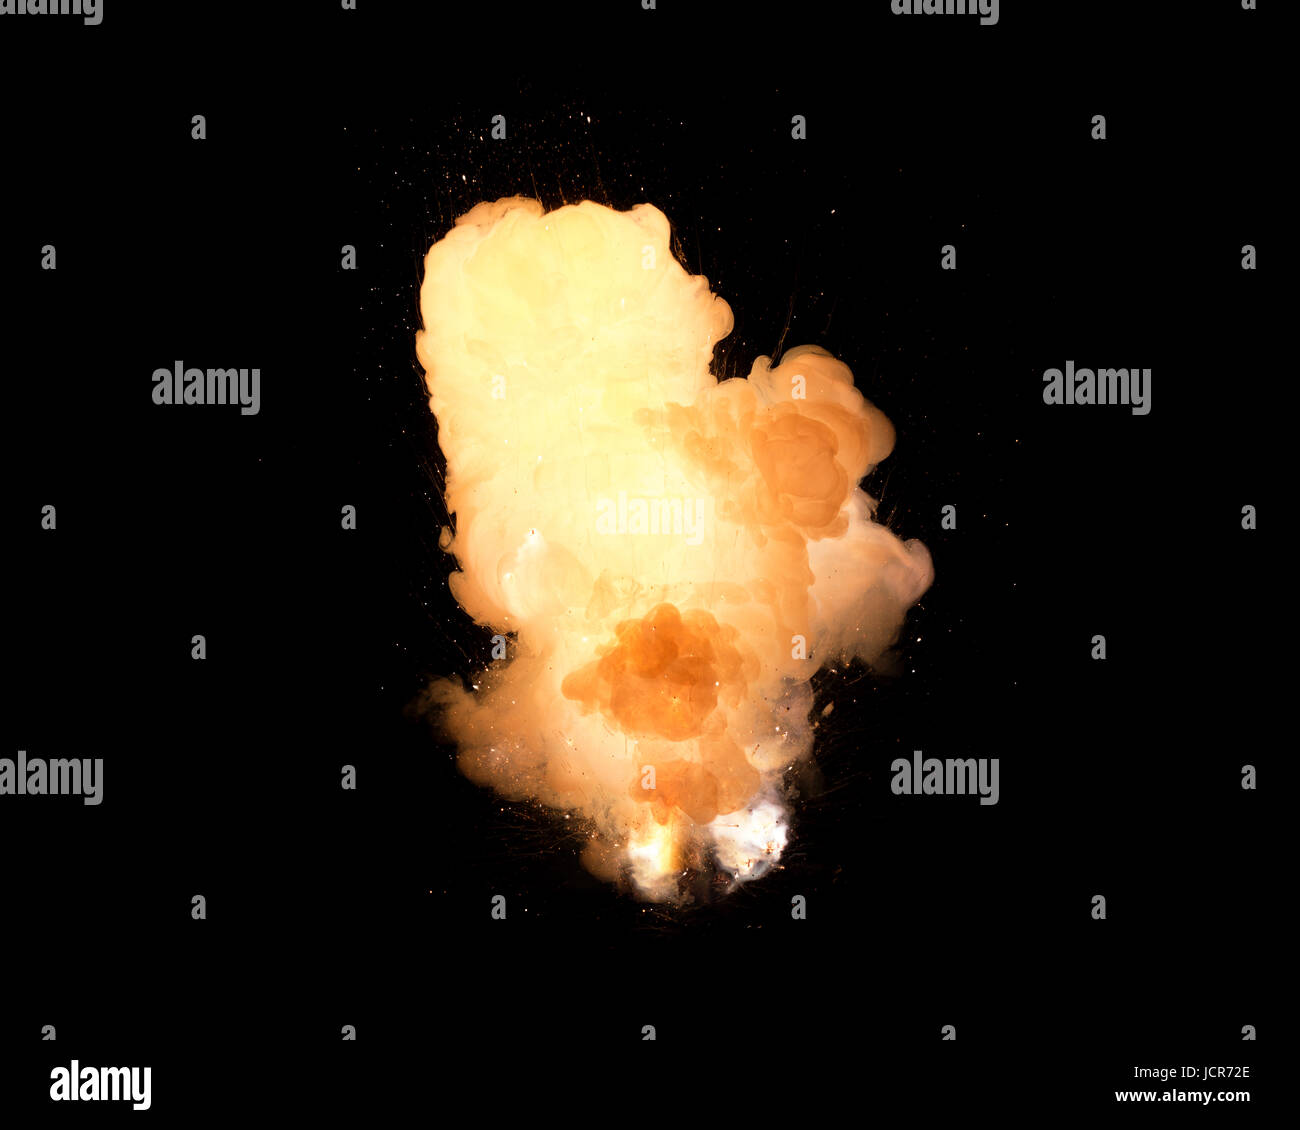 Énorme explosion extrêmement chaud, avec des étincelles et de la fumée chaude, sur fond noir Banque D'Images